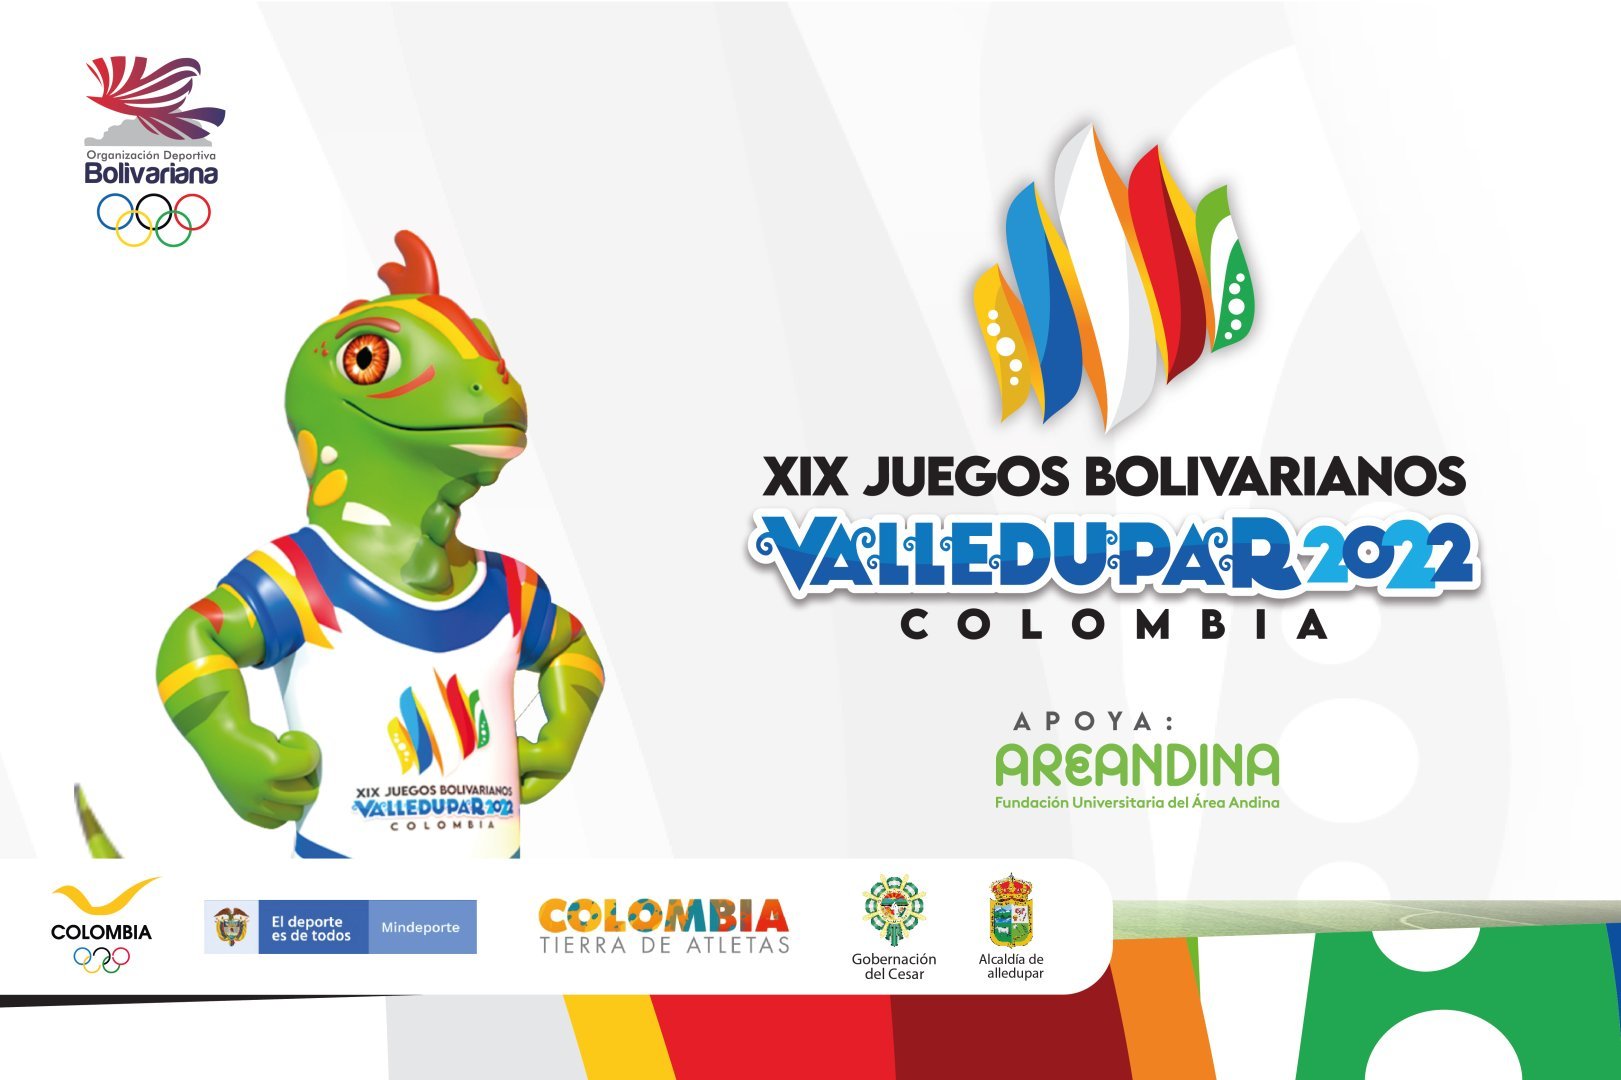 Juegos_bolivarianos_valledupar_2022